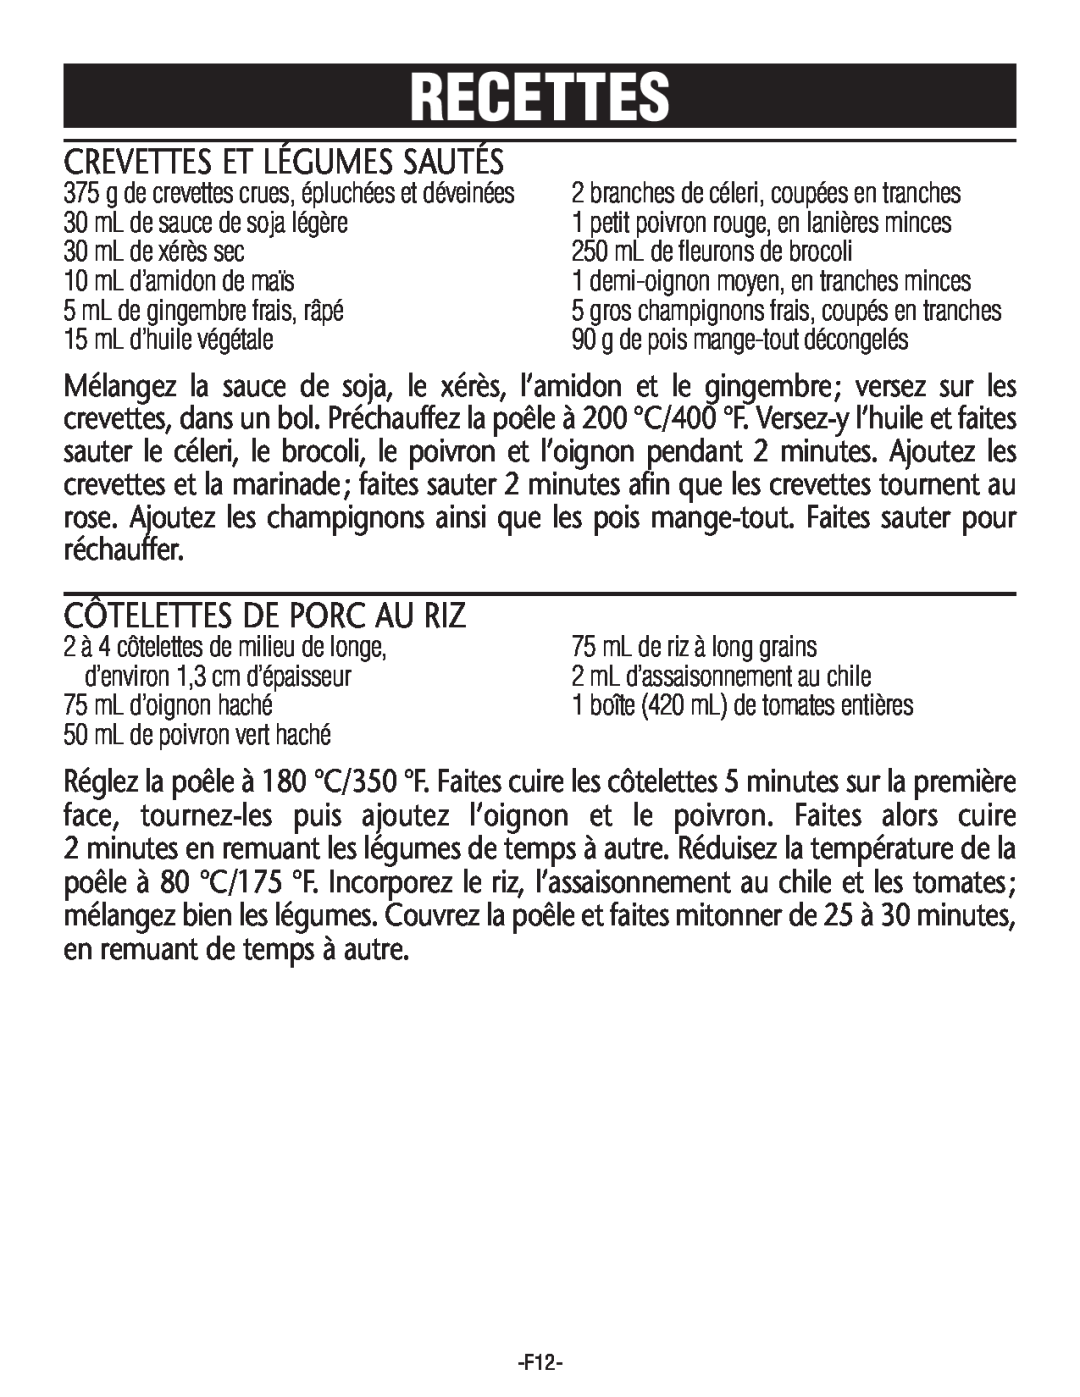 Rival S16SG-CN manual Crevettes Et Légumes Sautés, Côtelettes De Porc Au Riz, Recettes 